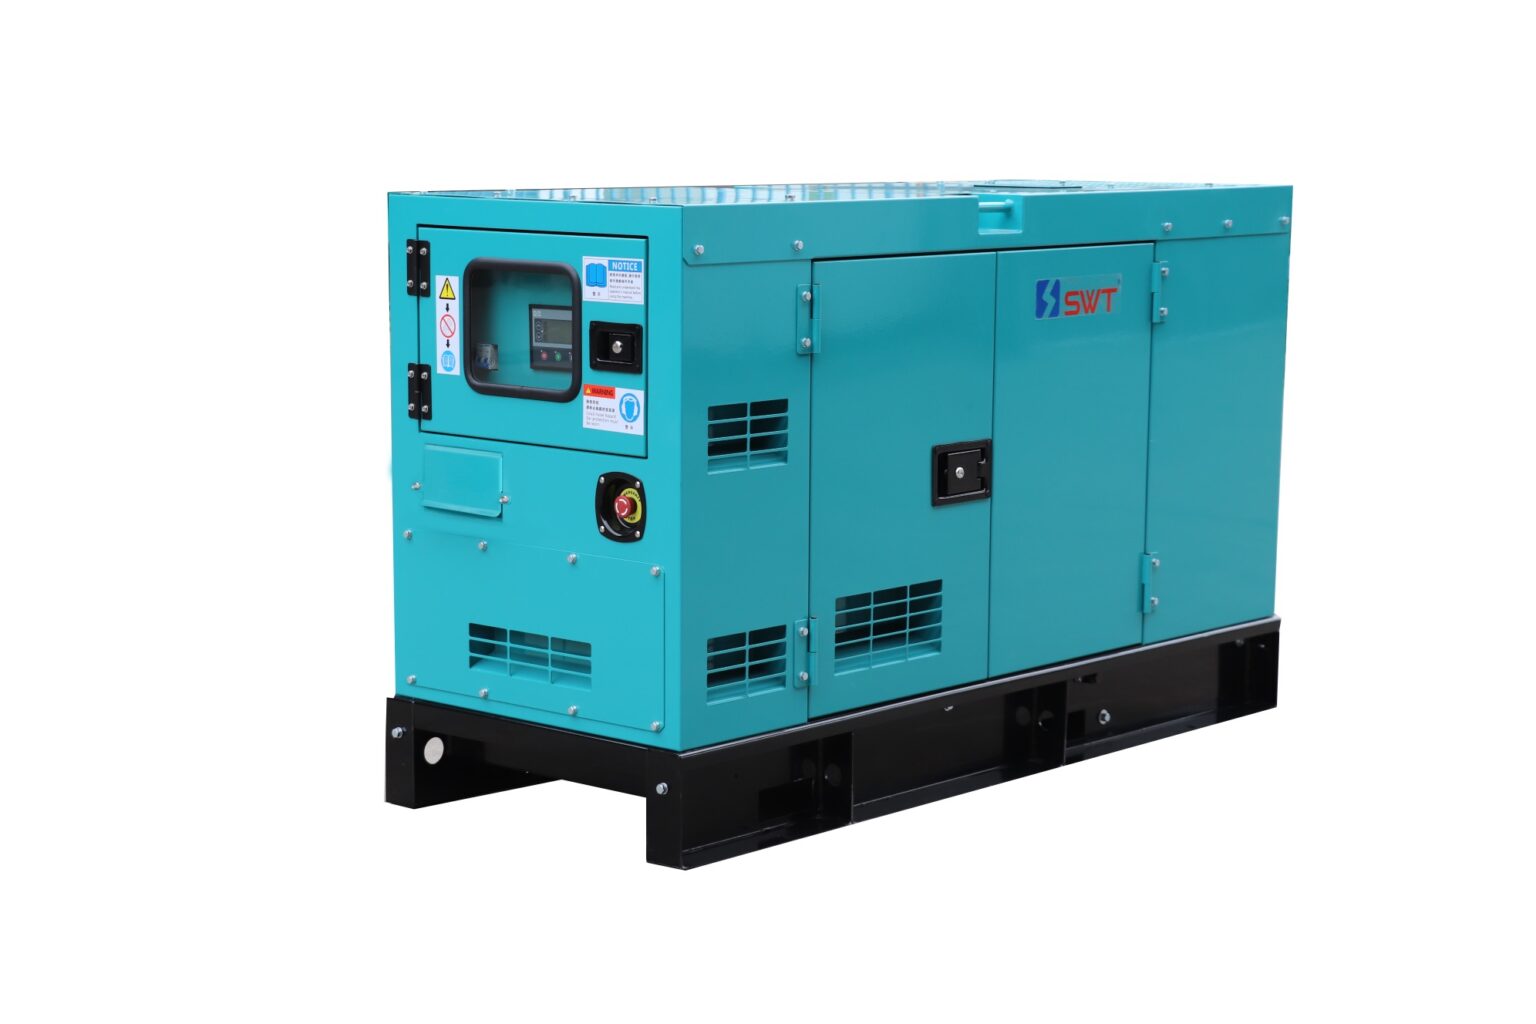 SWT SKF compact diesel generators powered by Kubota